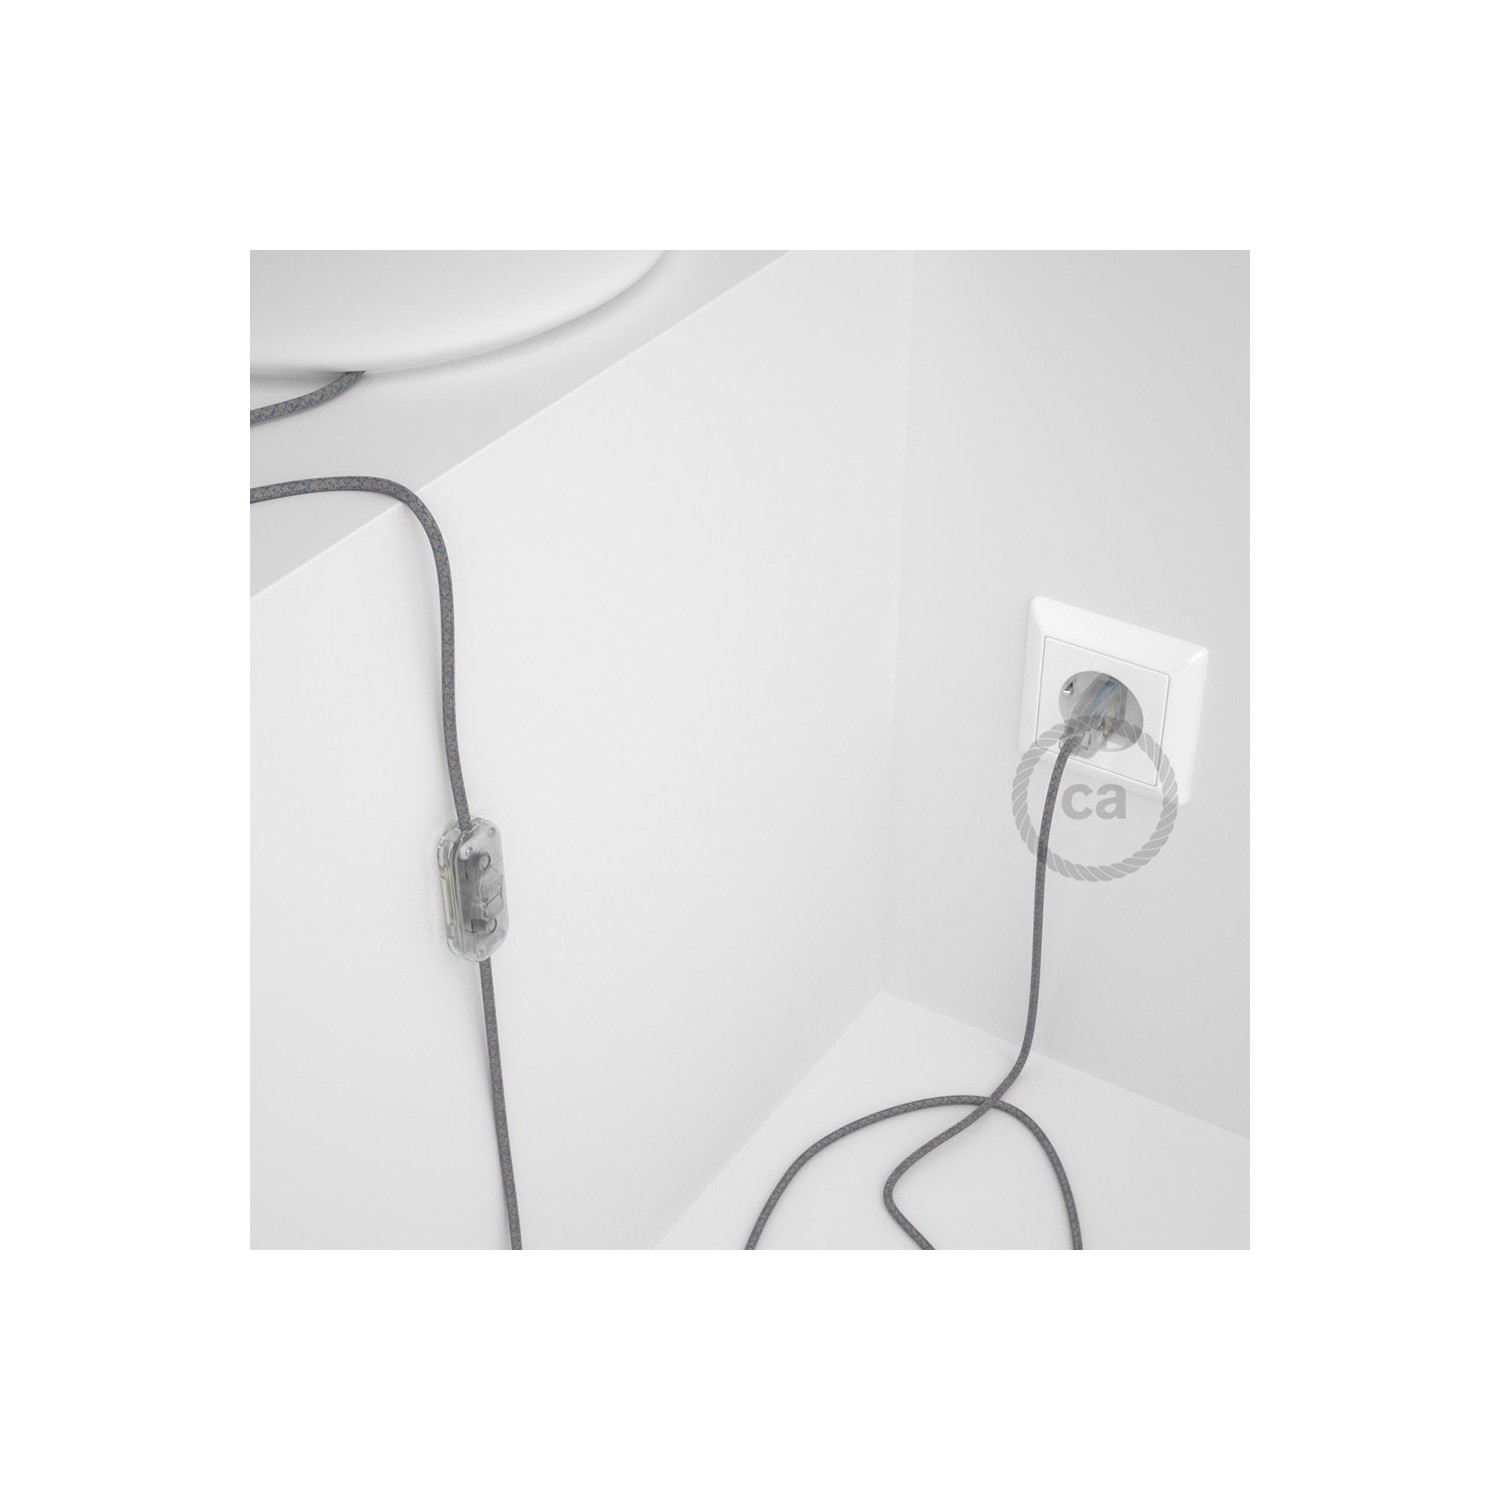 Cordon pour lampe, câble RD65 Losange Bleu Steward 1,80 m. Choisissez la couleur de la fiche et de l'interrupteur!